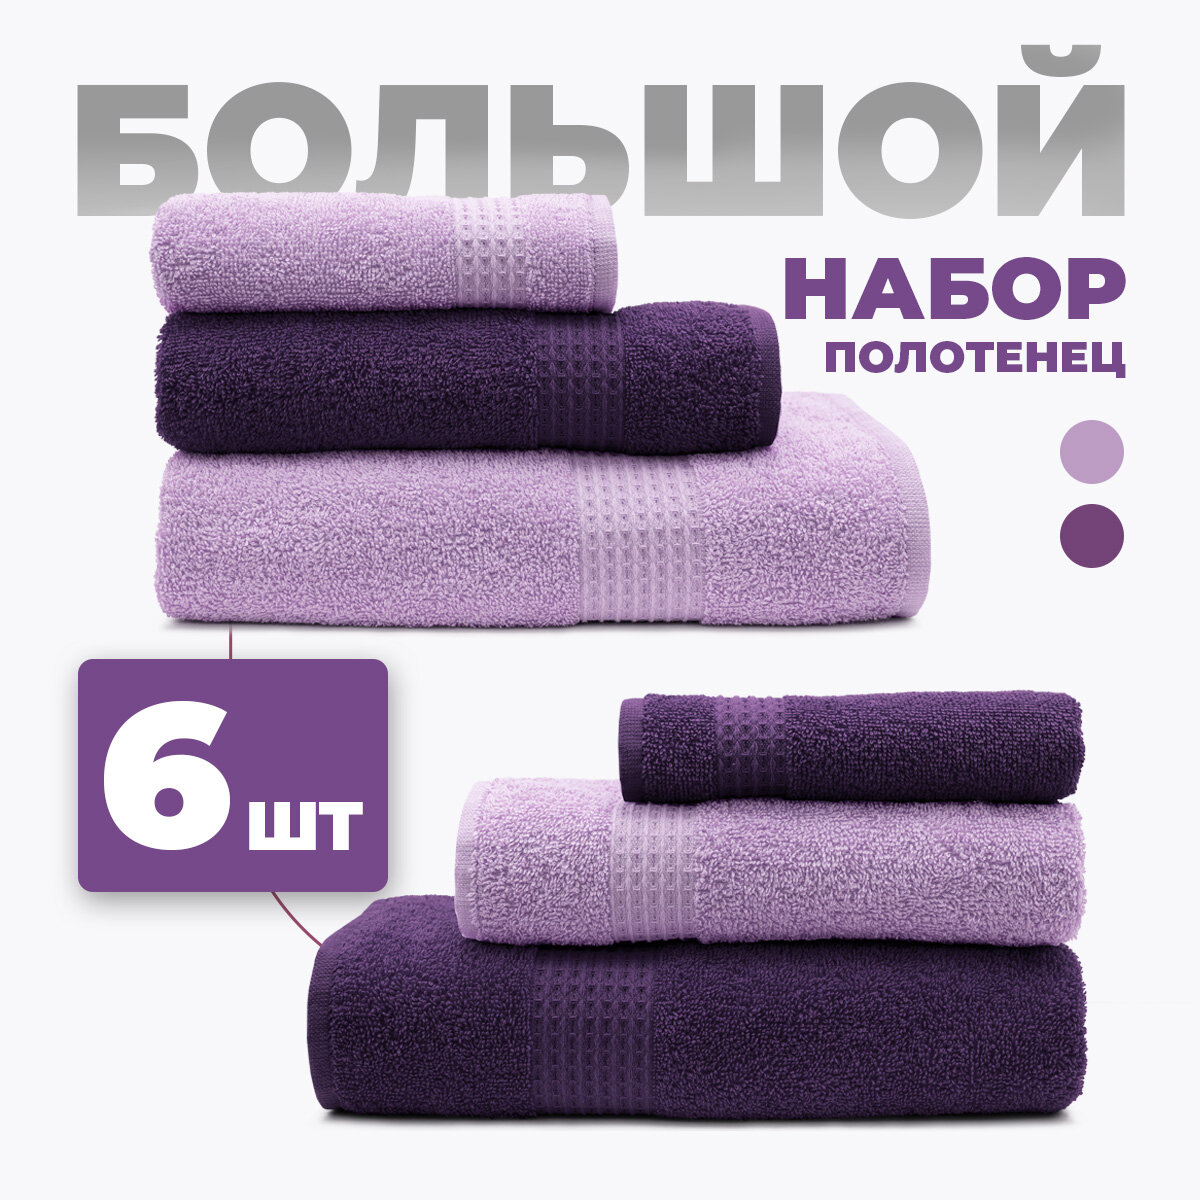 Большой набор махровых полотенец для всей семьи Самур - 6 штук (2 больших, 2 средних, 2 маленьких) Фиолетовый/ хлопок / подарок